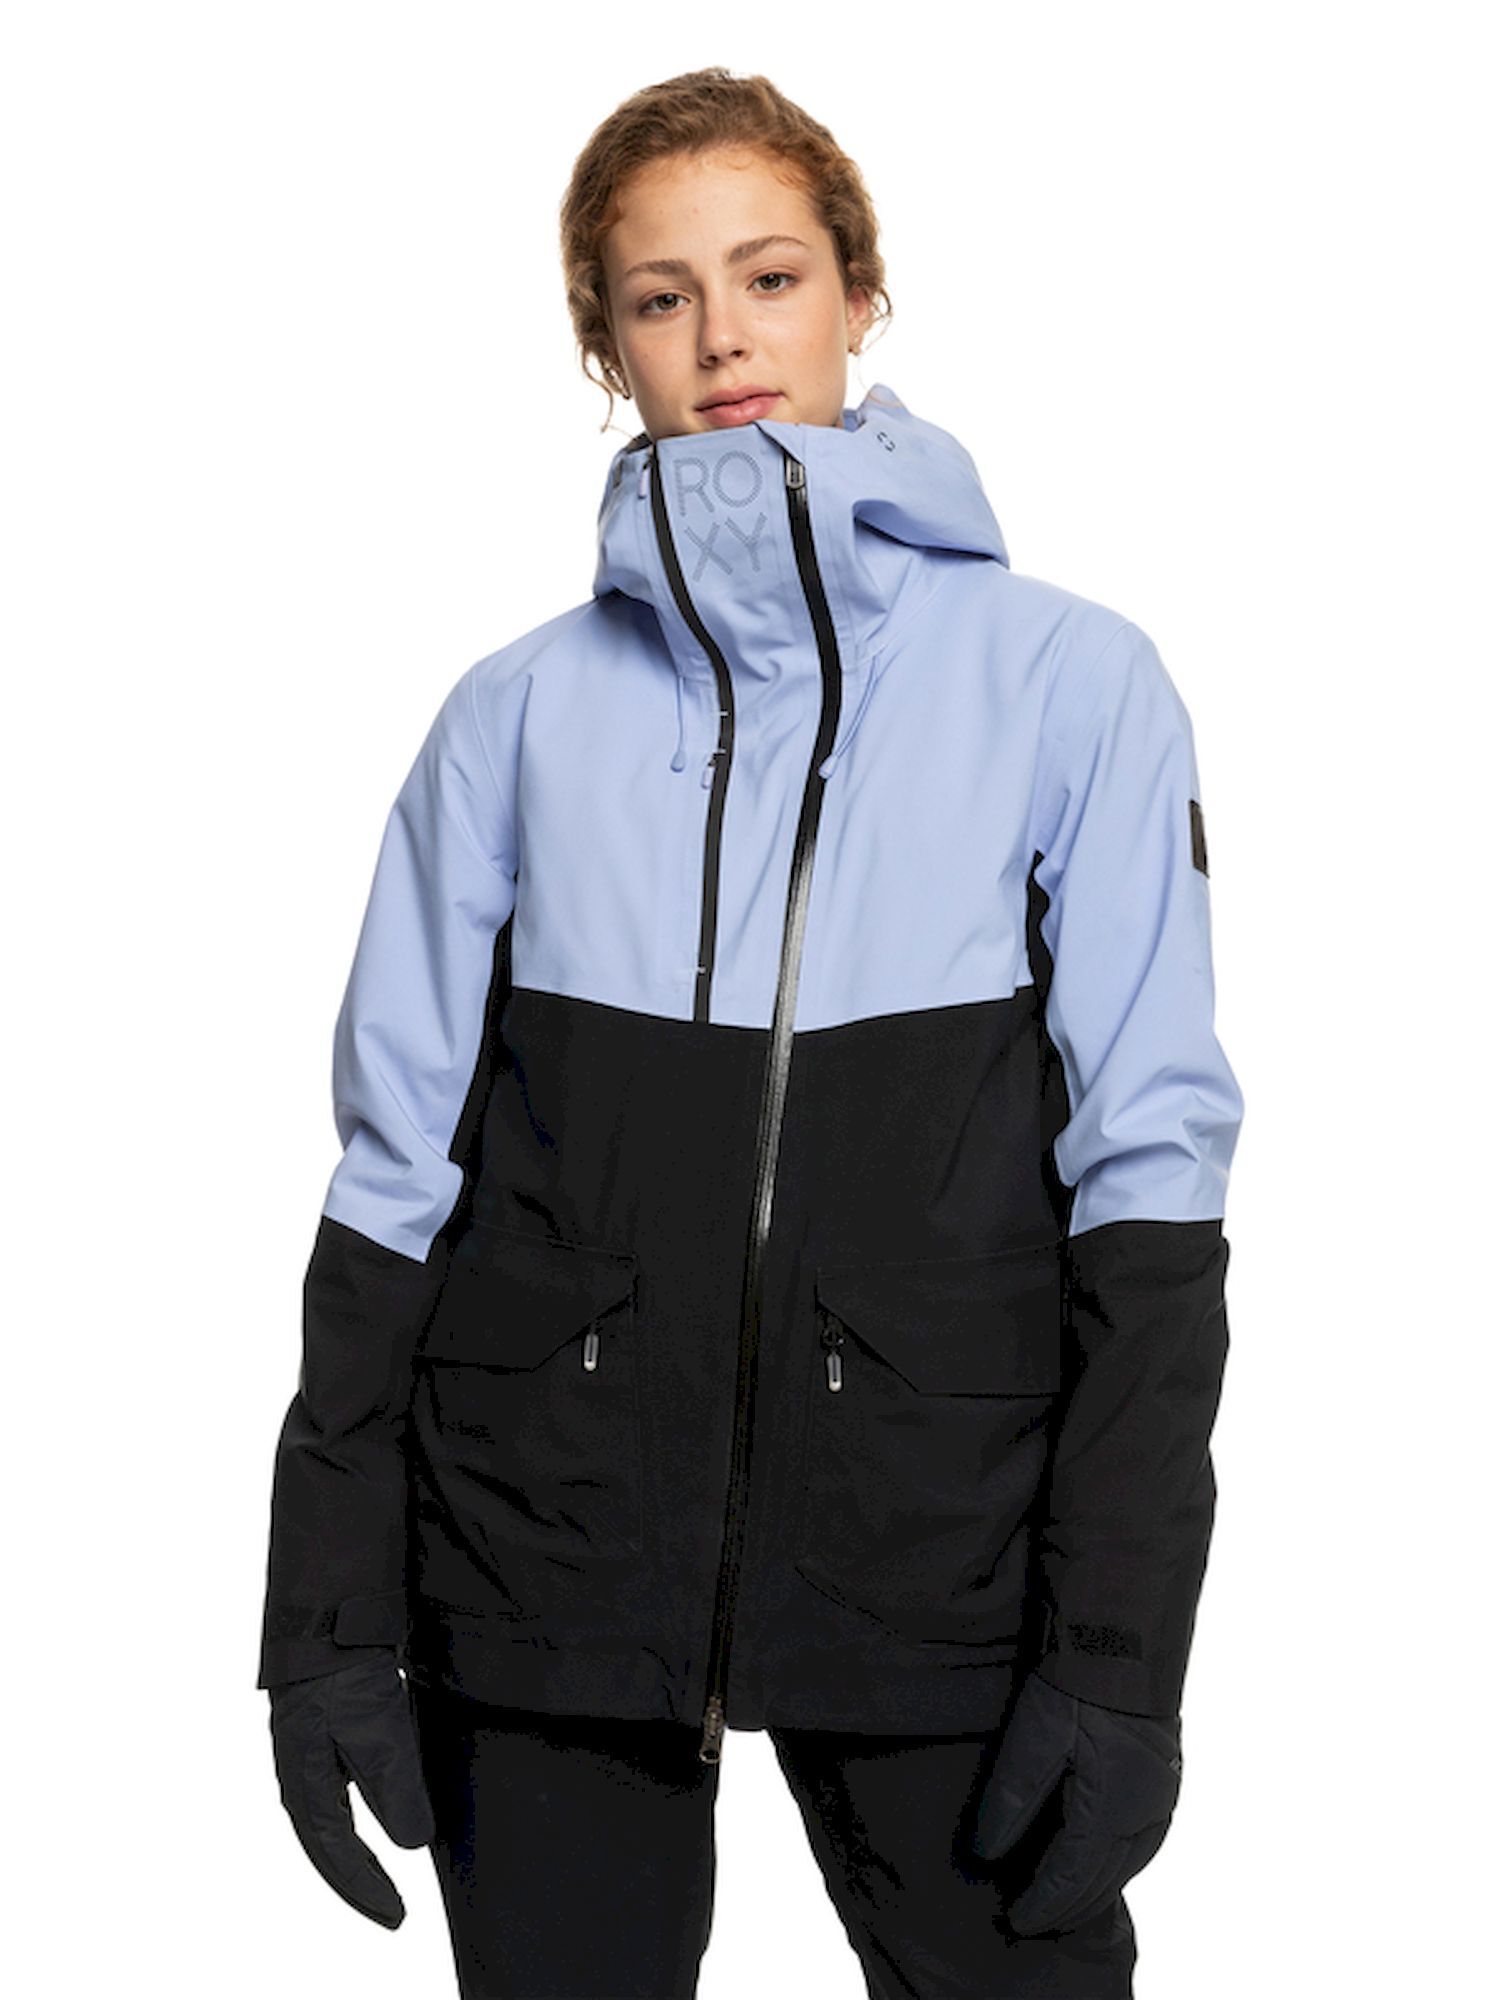 Roxy Gore-Tex Stretch Purelines Jacket - Chaqueta de esquí - Mujer